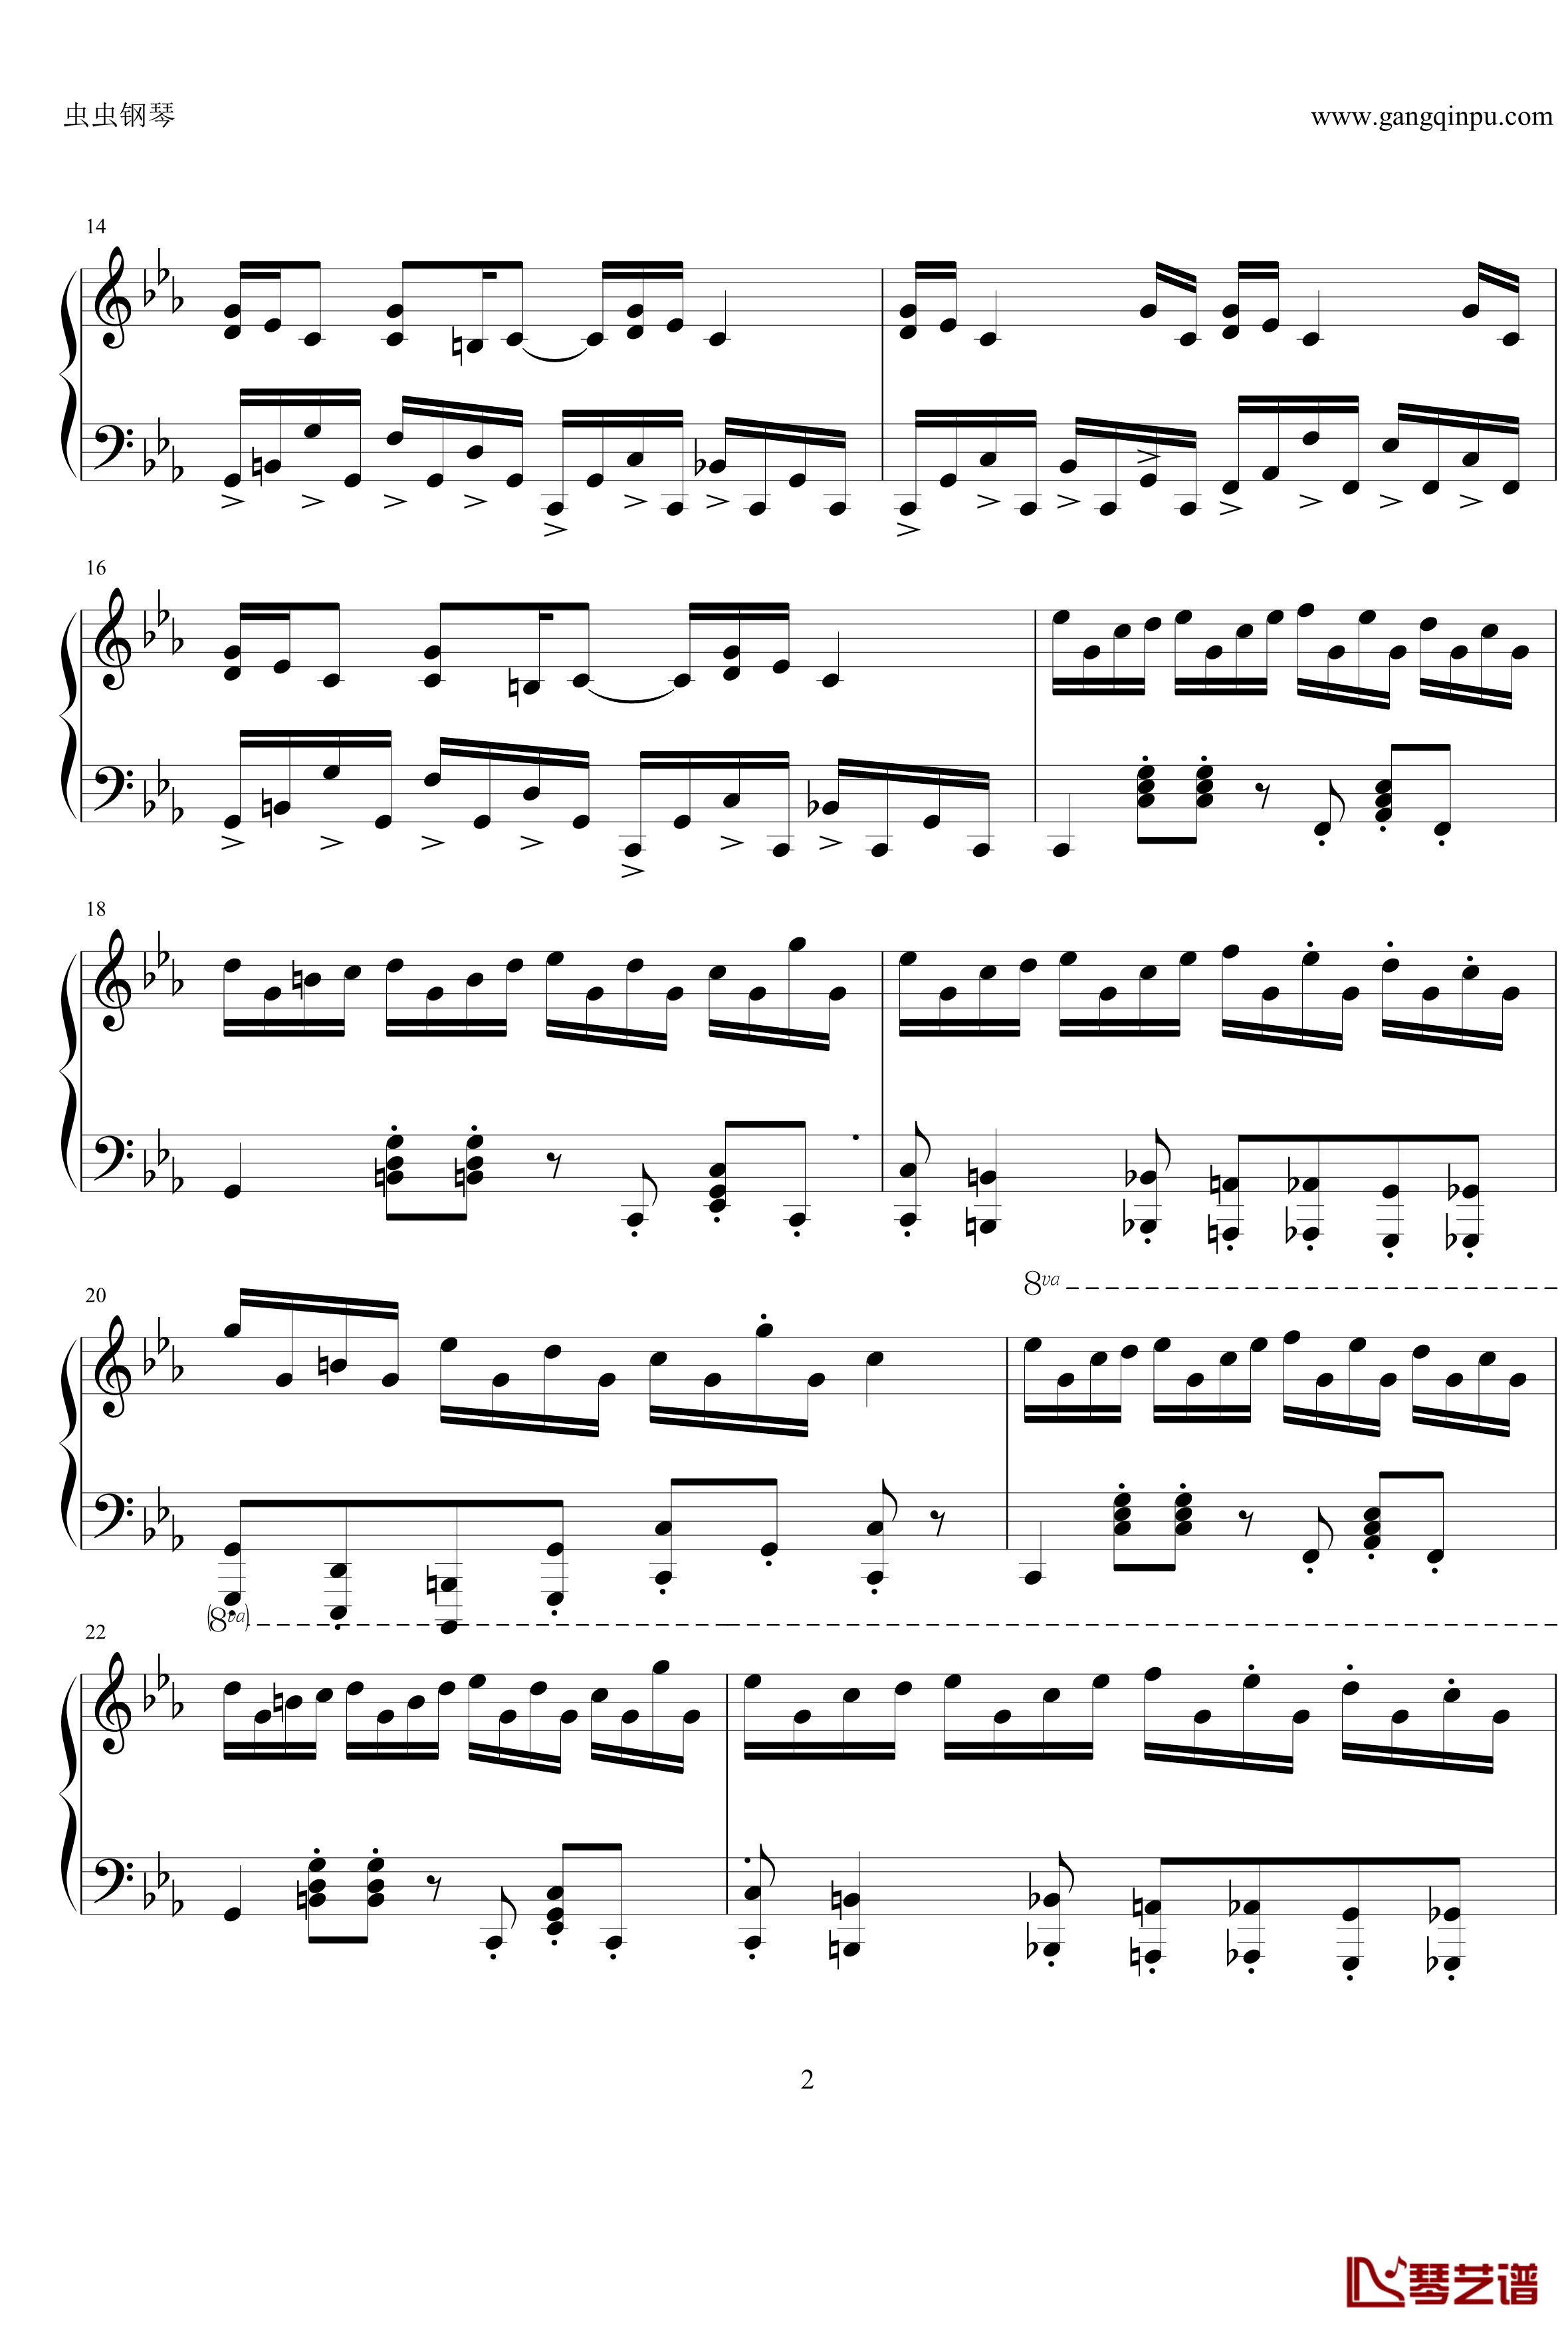 克罗地亚狂想曲pure1钢琴谱-现已绝版-马克西姆-Maksim·Mrvica2